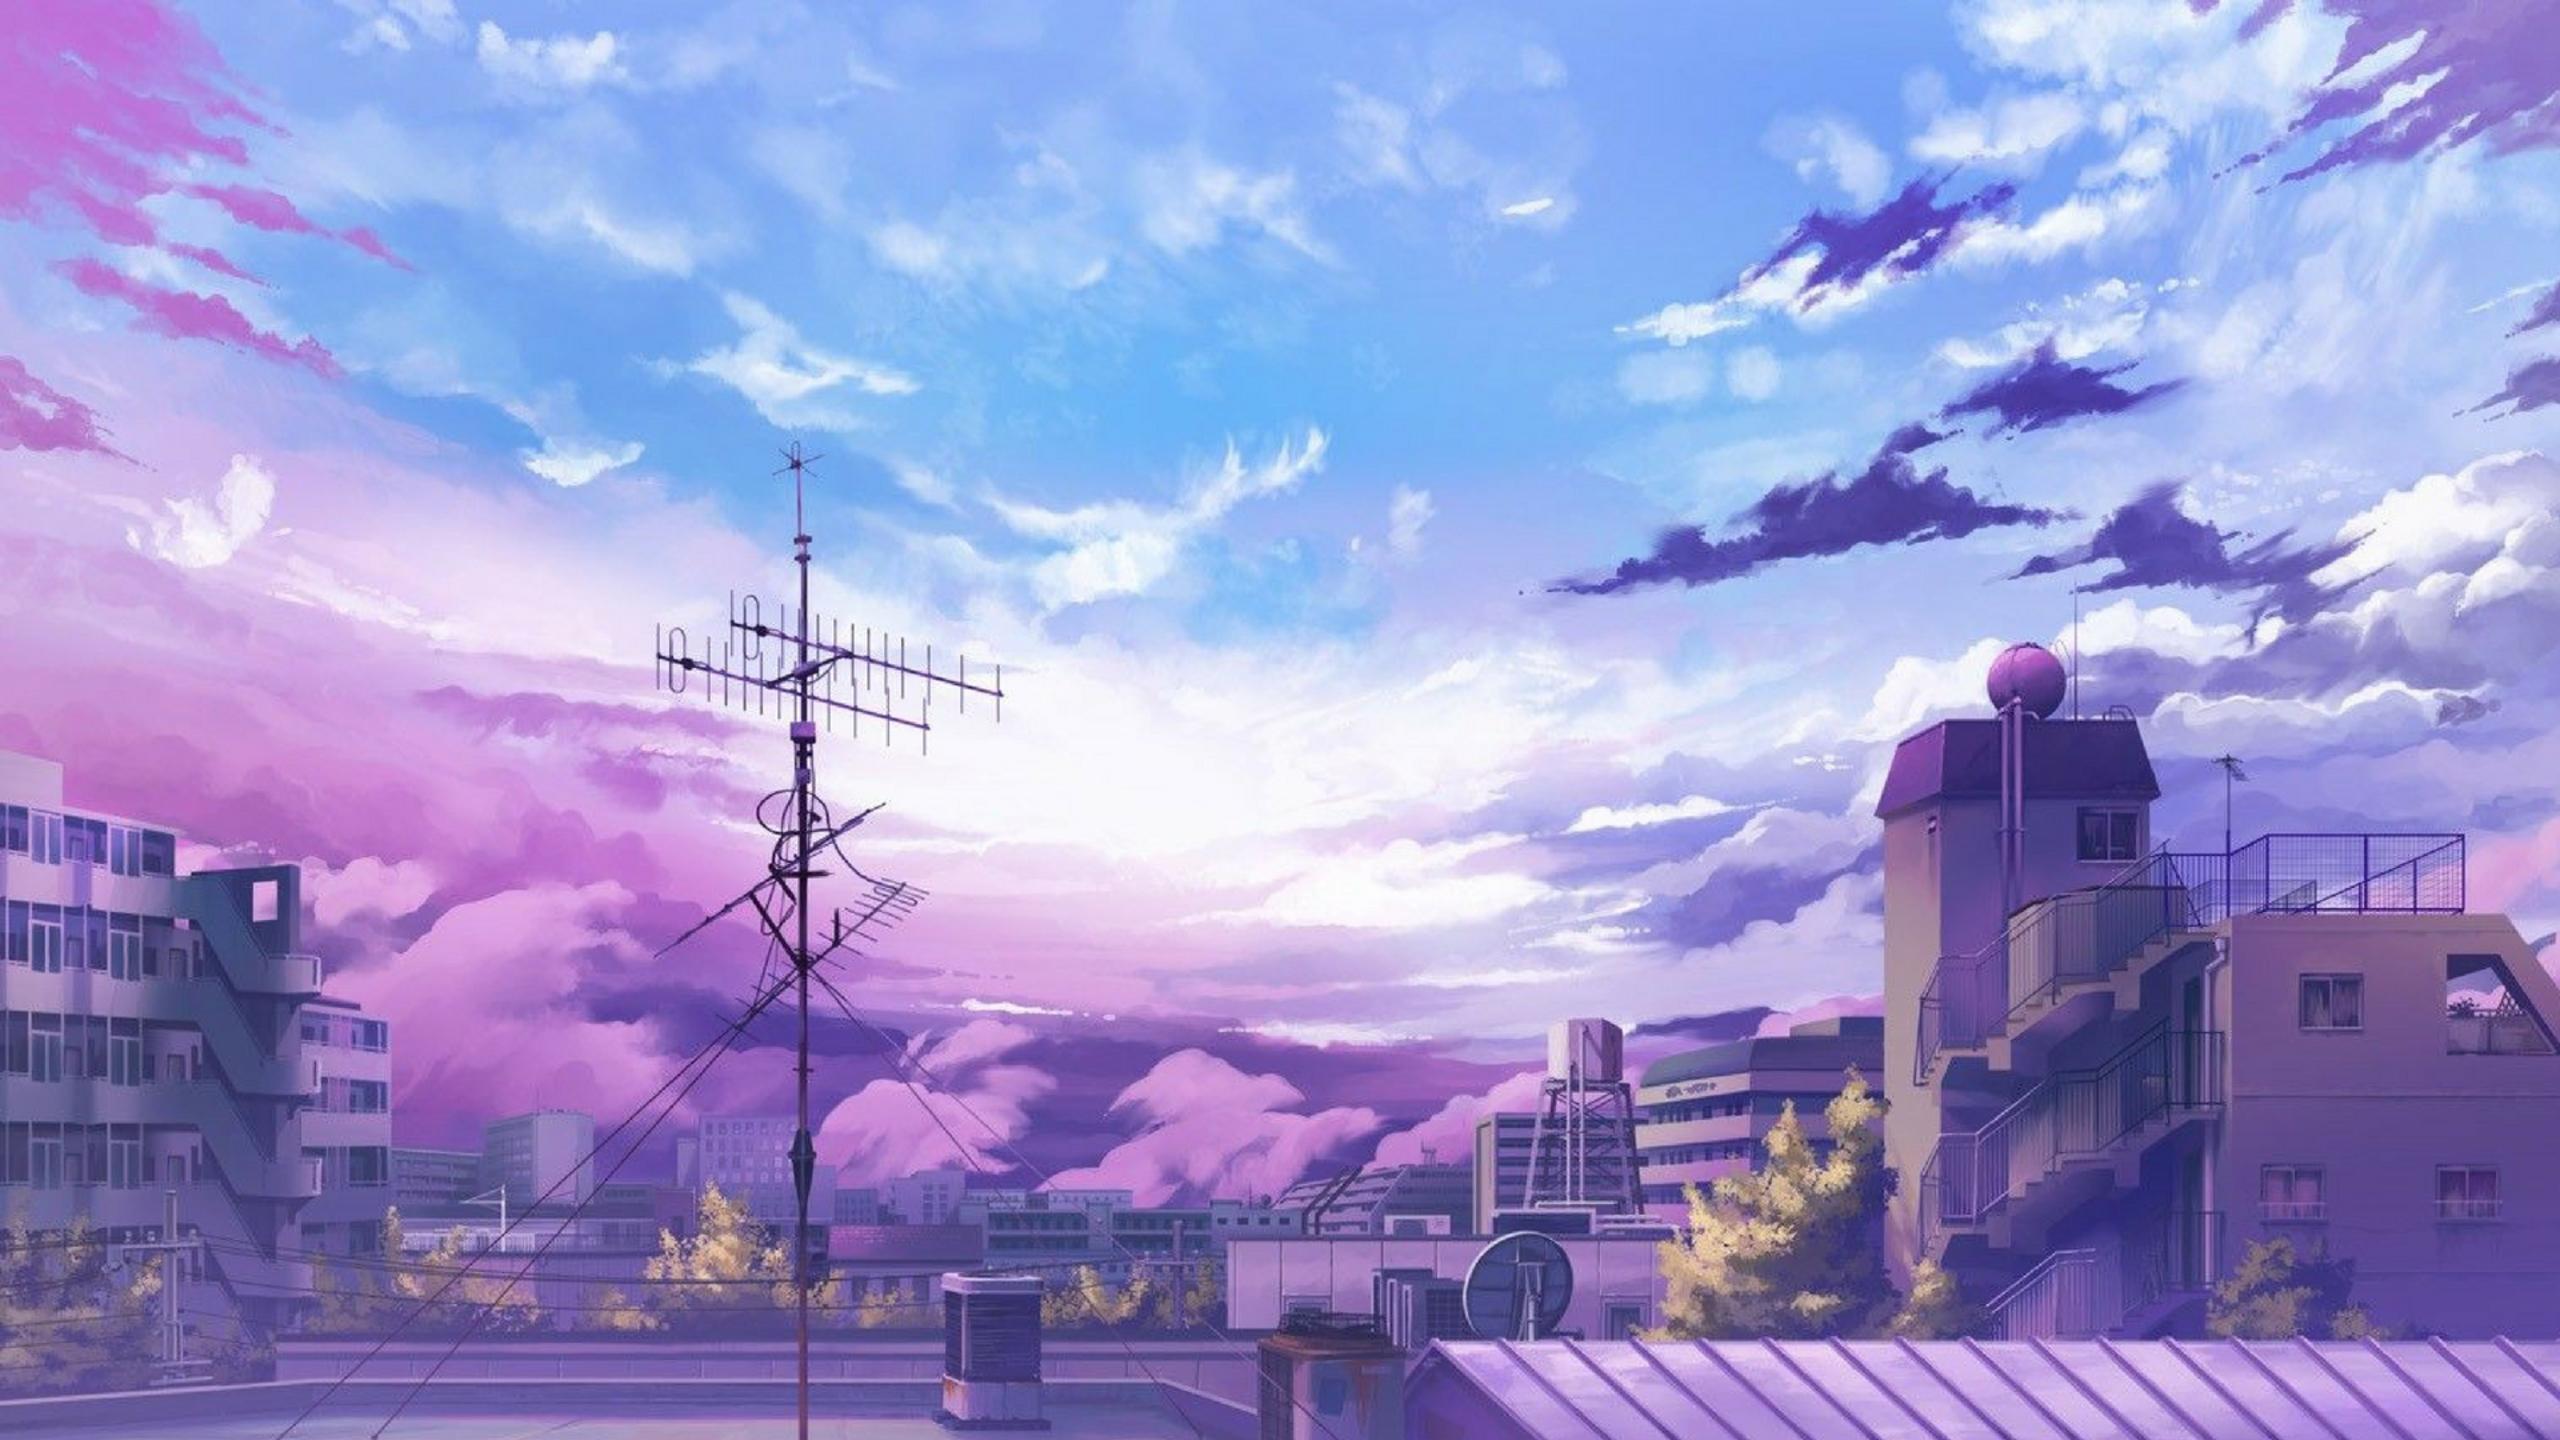 Anime thành phố hình nền máy tính: Lấy cảm hứng từ các bộ anime về thành phố, hình nền máy tính với chủ đề anime thành phố sẽ giúp bạn trang trí cho thiết bị của mình thêm phần sinh động và ấn tượng. Hình ảnh chi tiết và sống động sẽ khiến cho bạn cảm thấy như đang đi dạo phố trong cùng một thế giới của những nhân vật anime.